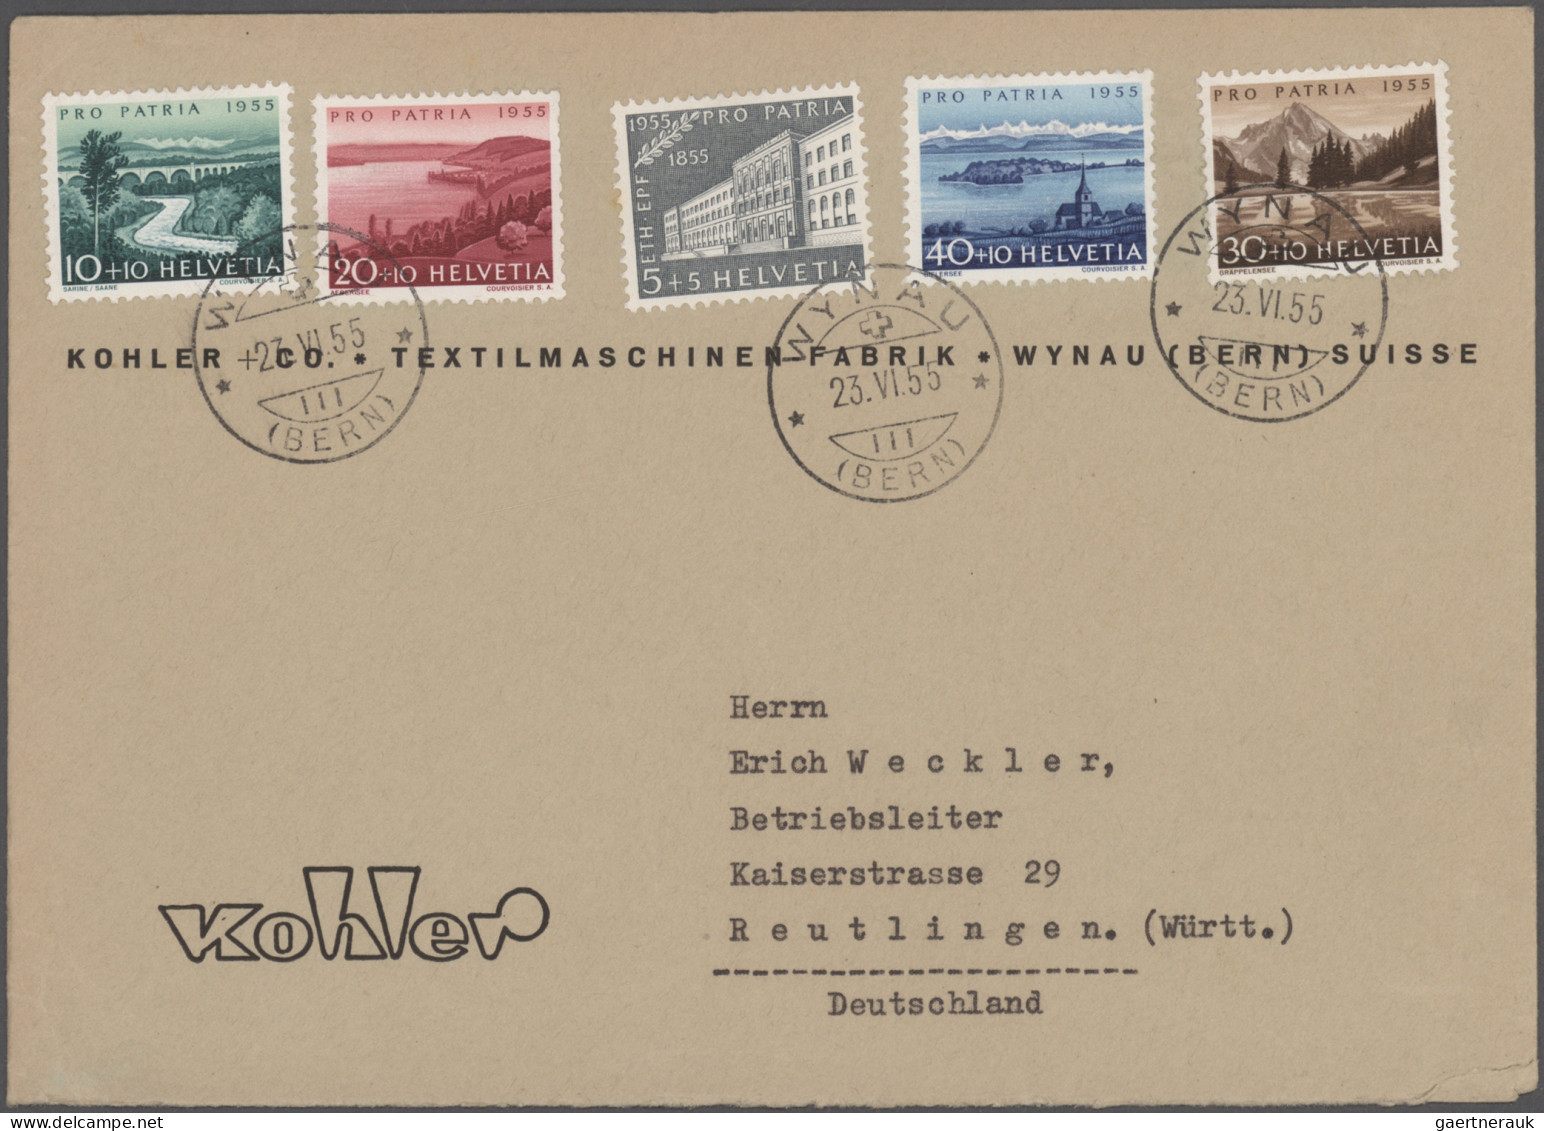 Schweiz: 1887/1975, vielseitige Partie von ca. 110 Briefen und Karten mit etlich